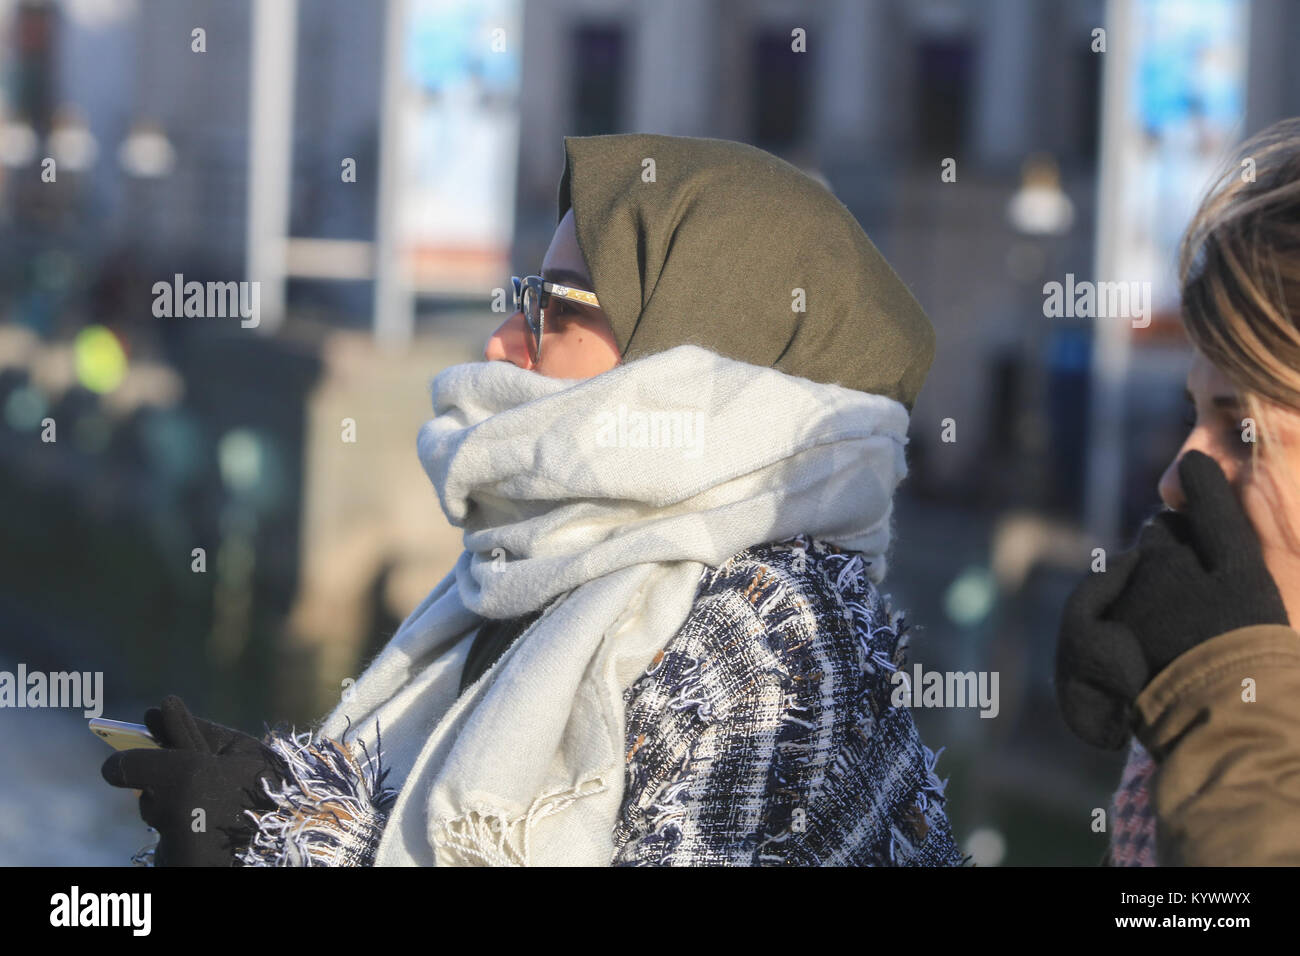 Londres, Royaume-Uni. 17 Jan, 2018. Les piétons bataille le froid et venteux de Westminster Bridge causées par l'Orage Fionn lors d'une journée ensoleillée avec la baisse des températures à 6 degrés Crédit : amer ghazzal/Alamy Live News Banque D'Images